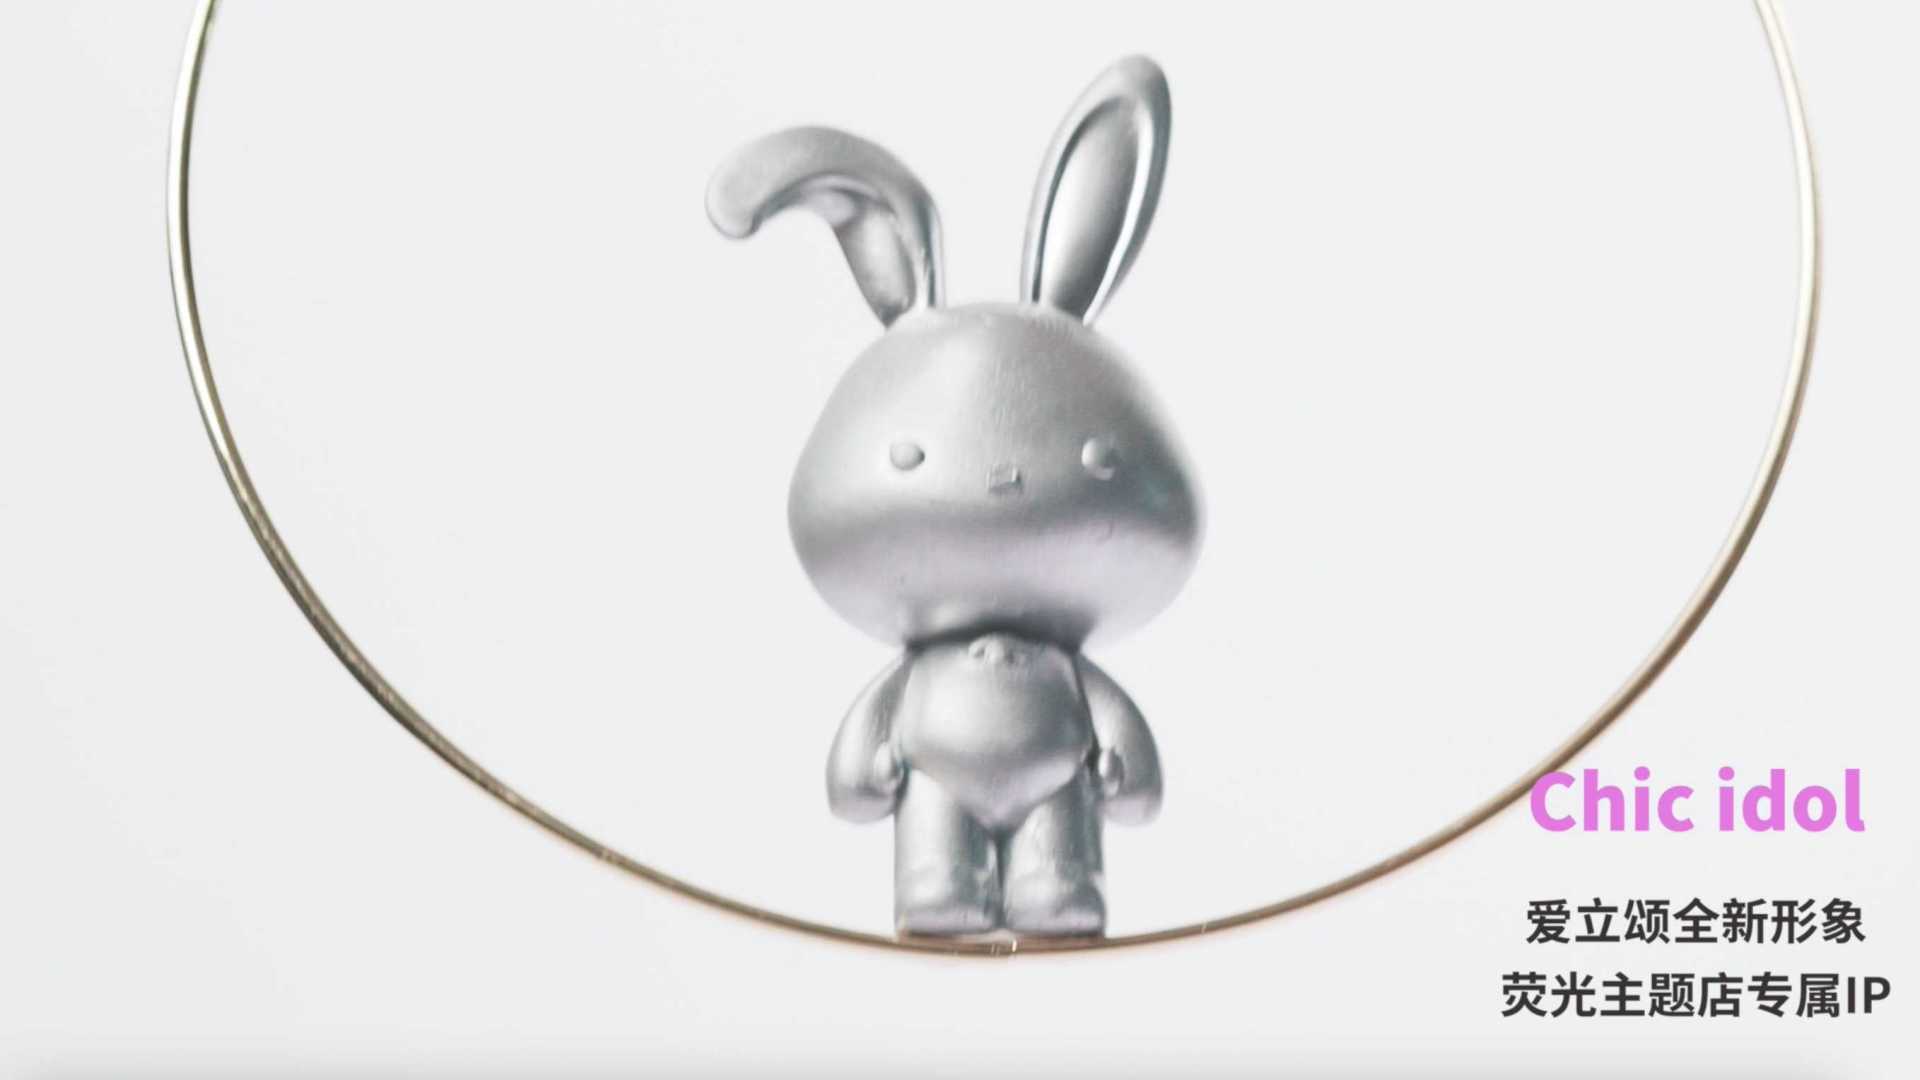 爱立颂-中式点心主题店兔子形象IP定格动画